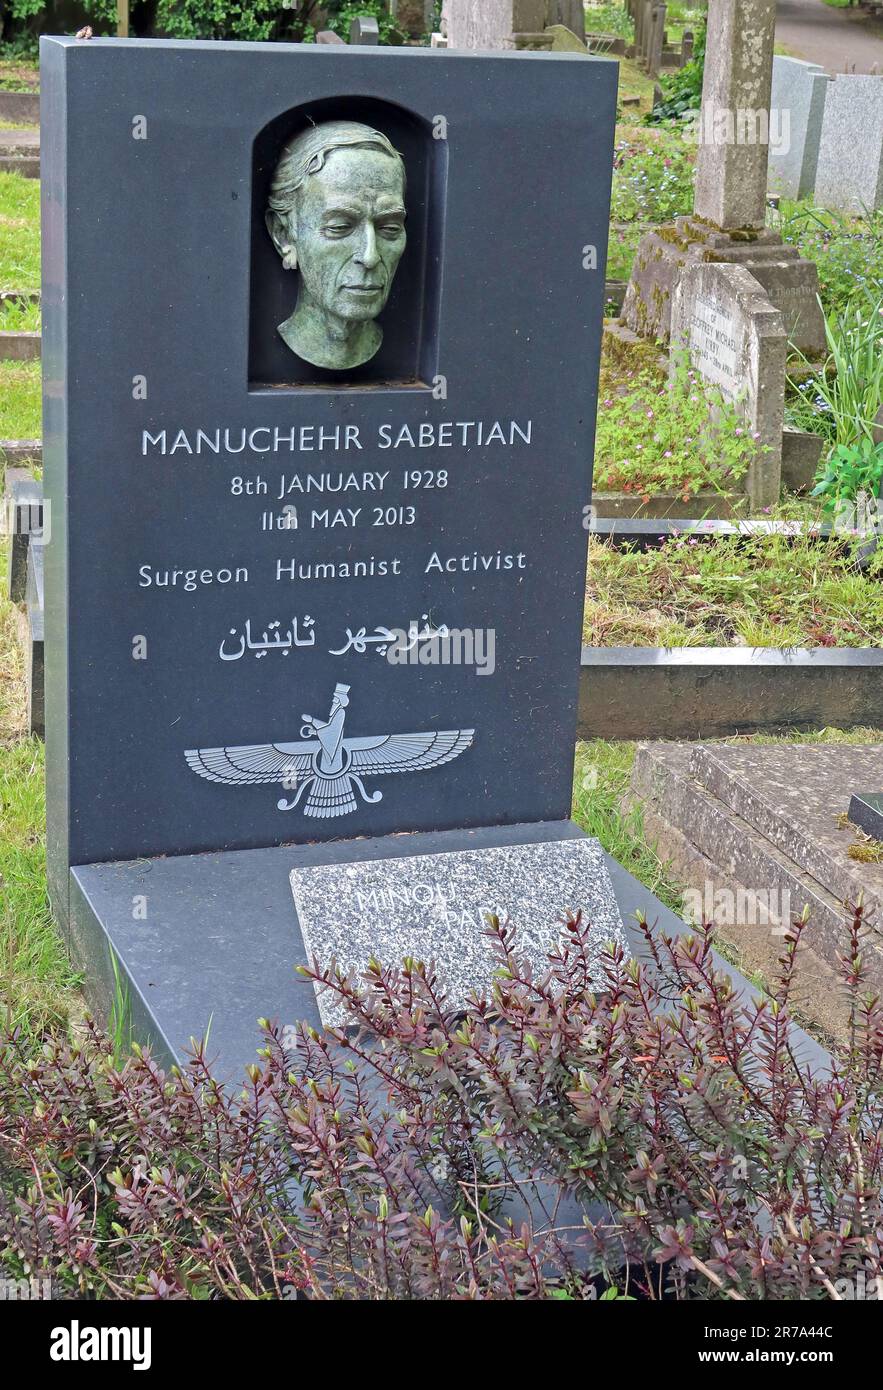 Tomba di Manuchehr Sabetian, chirurgo iraniano consulente, sepolto nel cimitero di Highgate, Londra, Swain's Lane, N6 6PJ Foto Stock